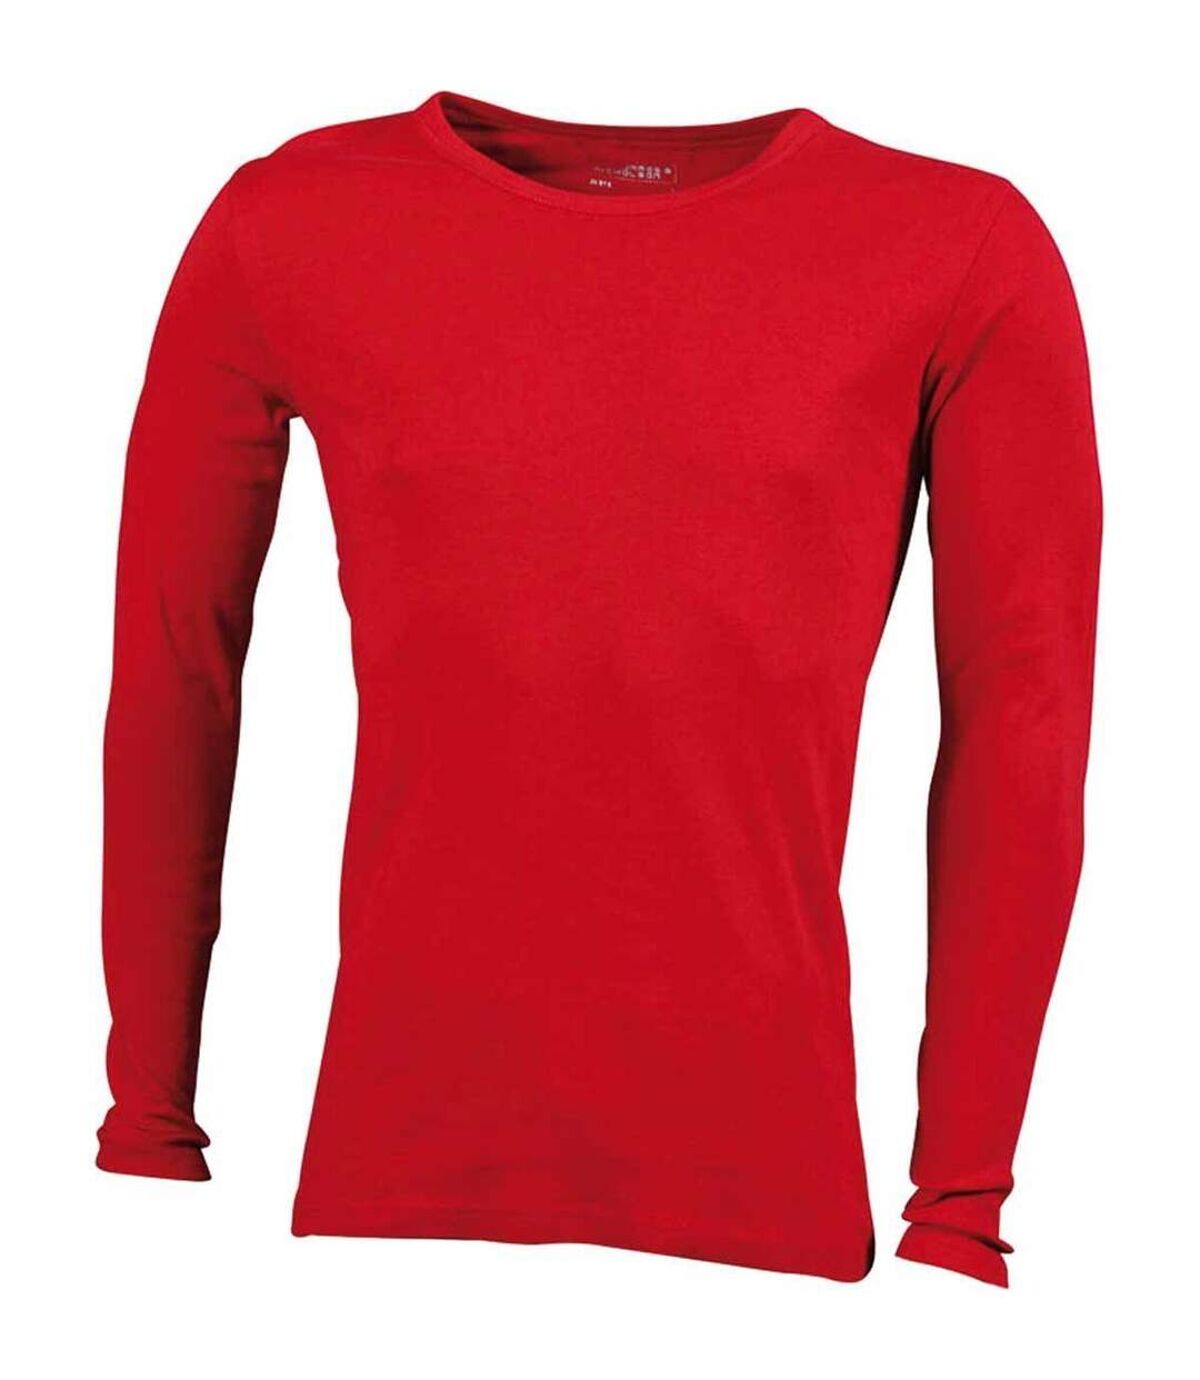 T-shirt homme manches longues - JN916 - rouge - coton extensible